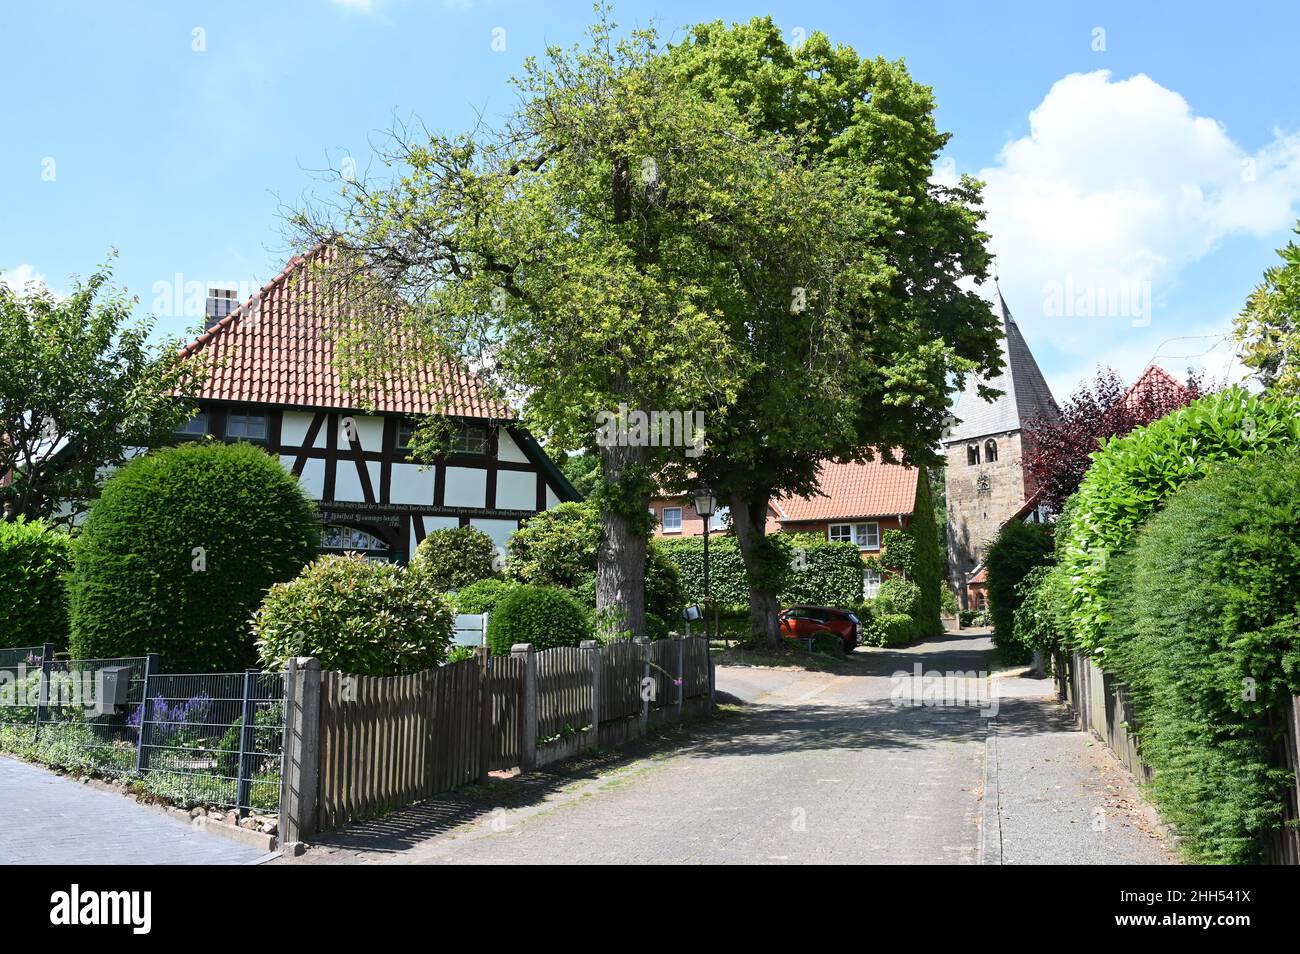 Marklohe: Vista idílica del pueblo con una casa de entramado de madera y una iglesia medieval Foto de stock